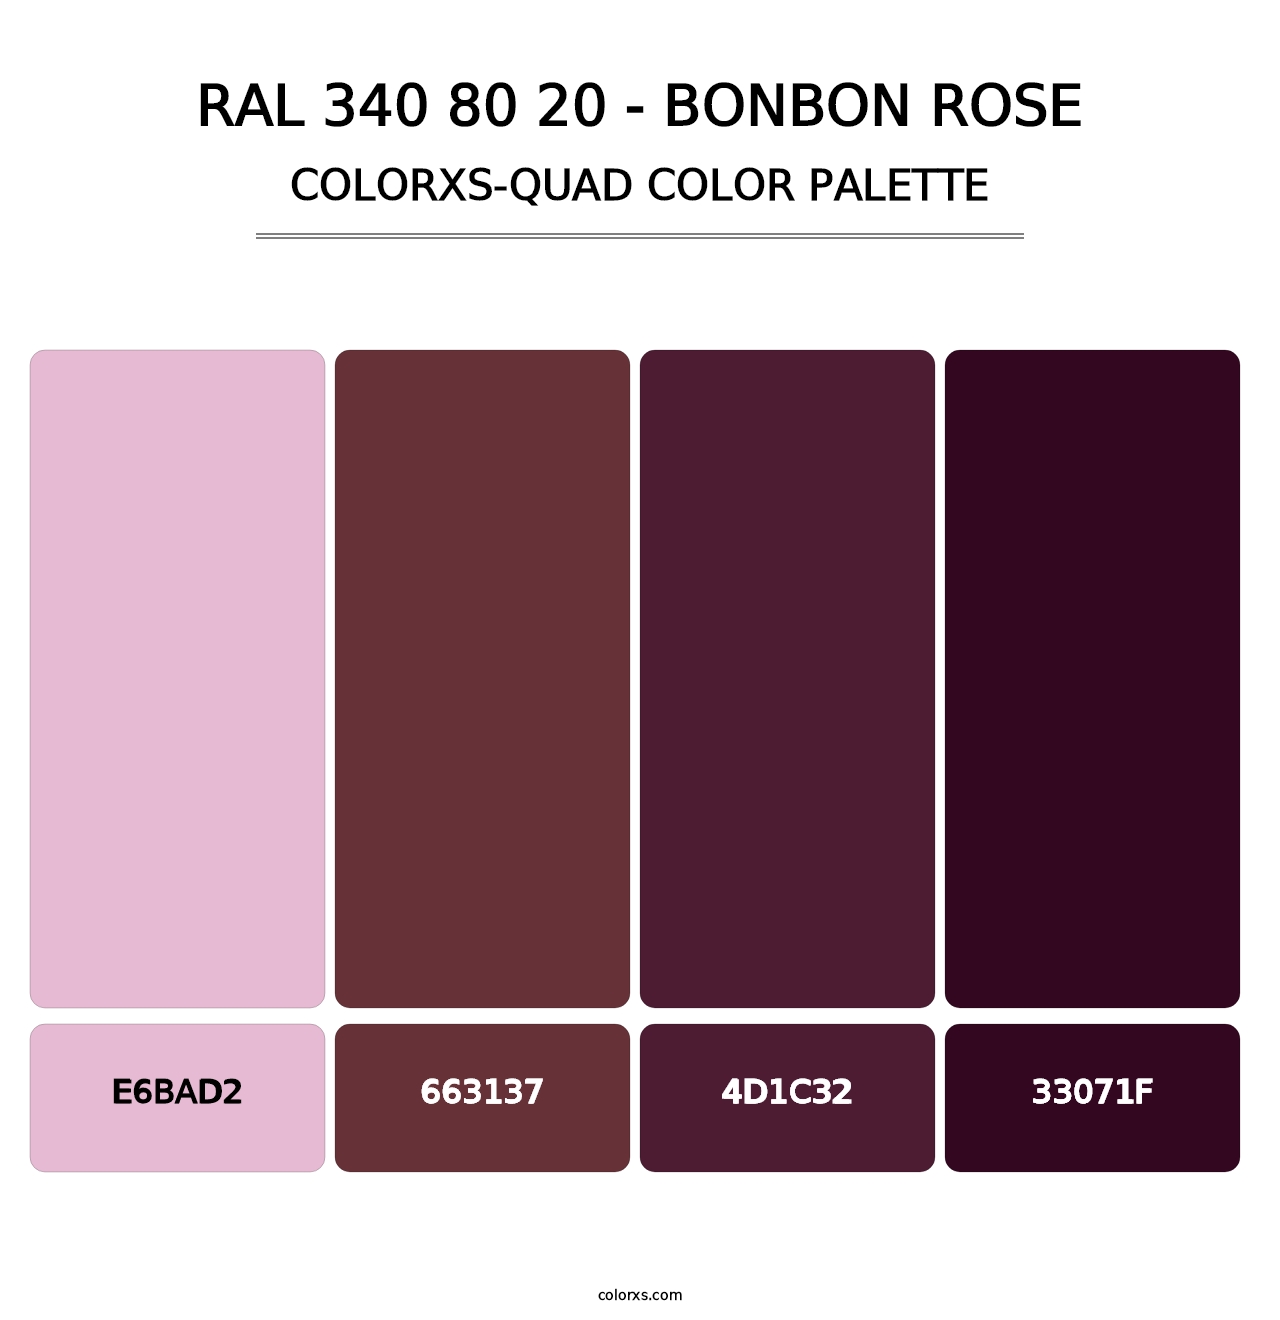 RAL 340 80 20 - Bonbon Rose - Colorxs Quad Palette